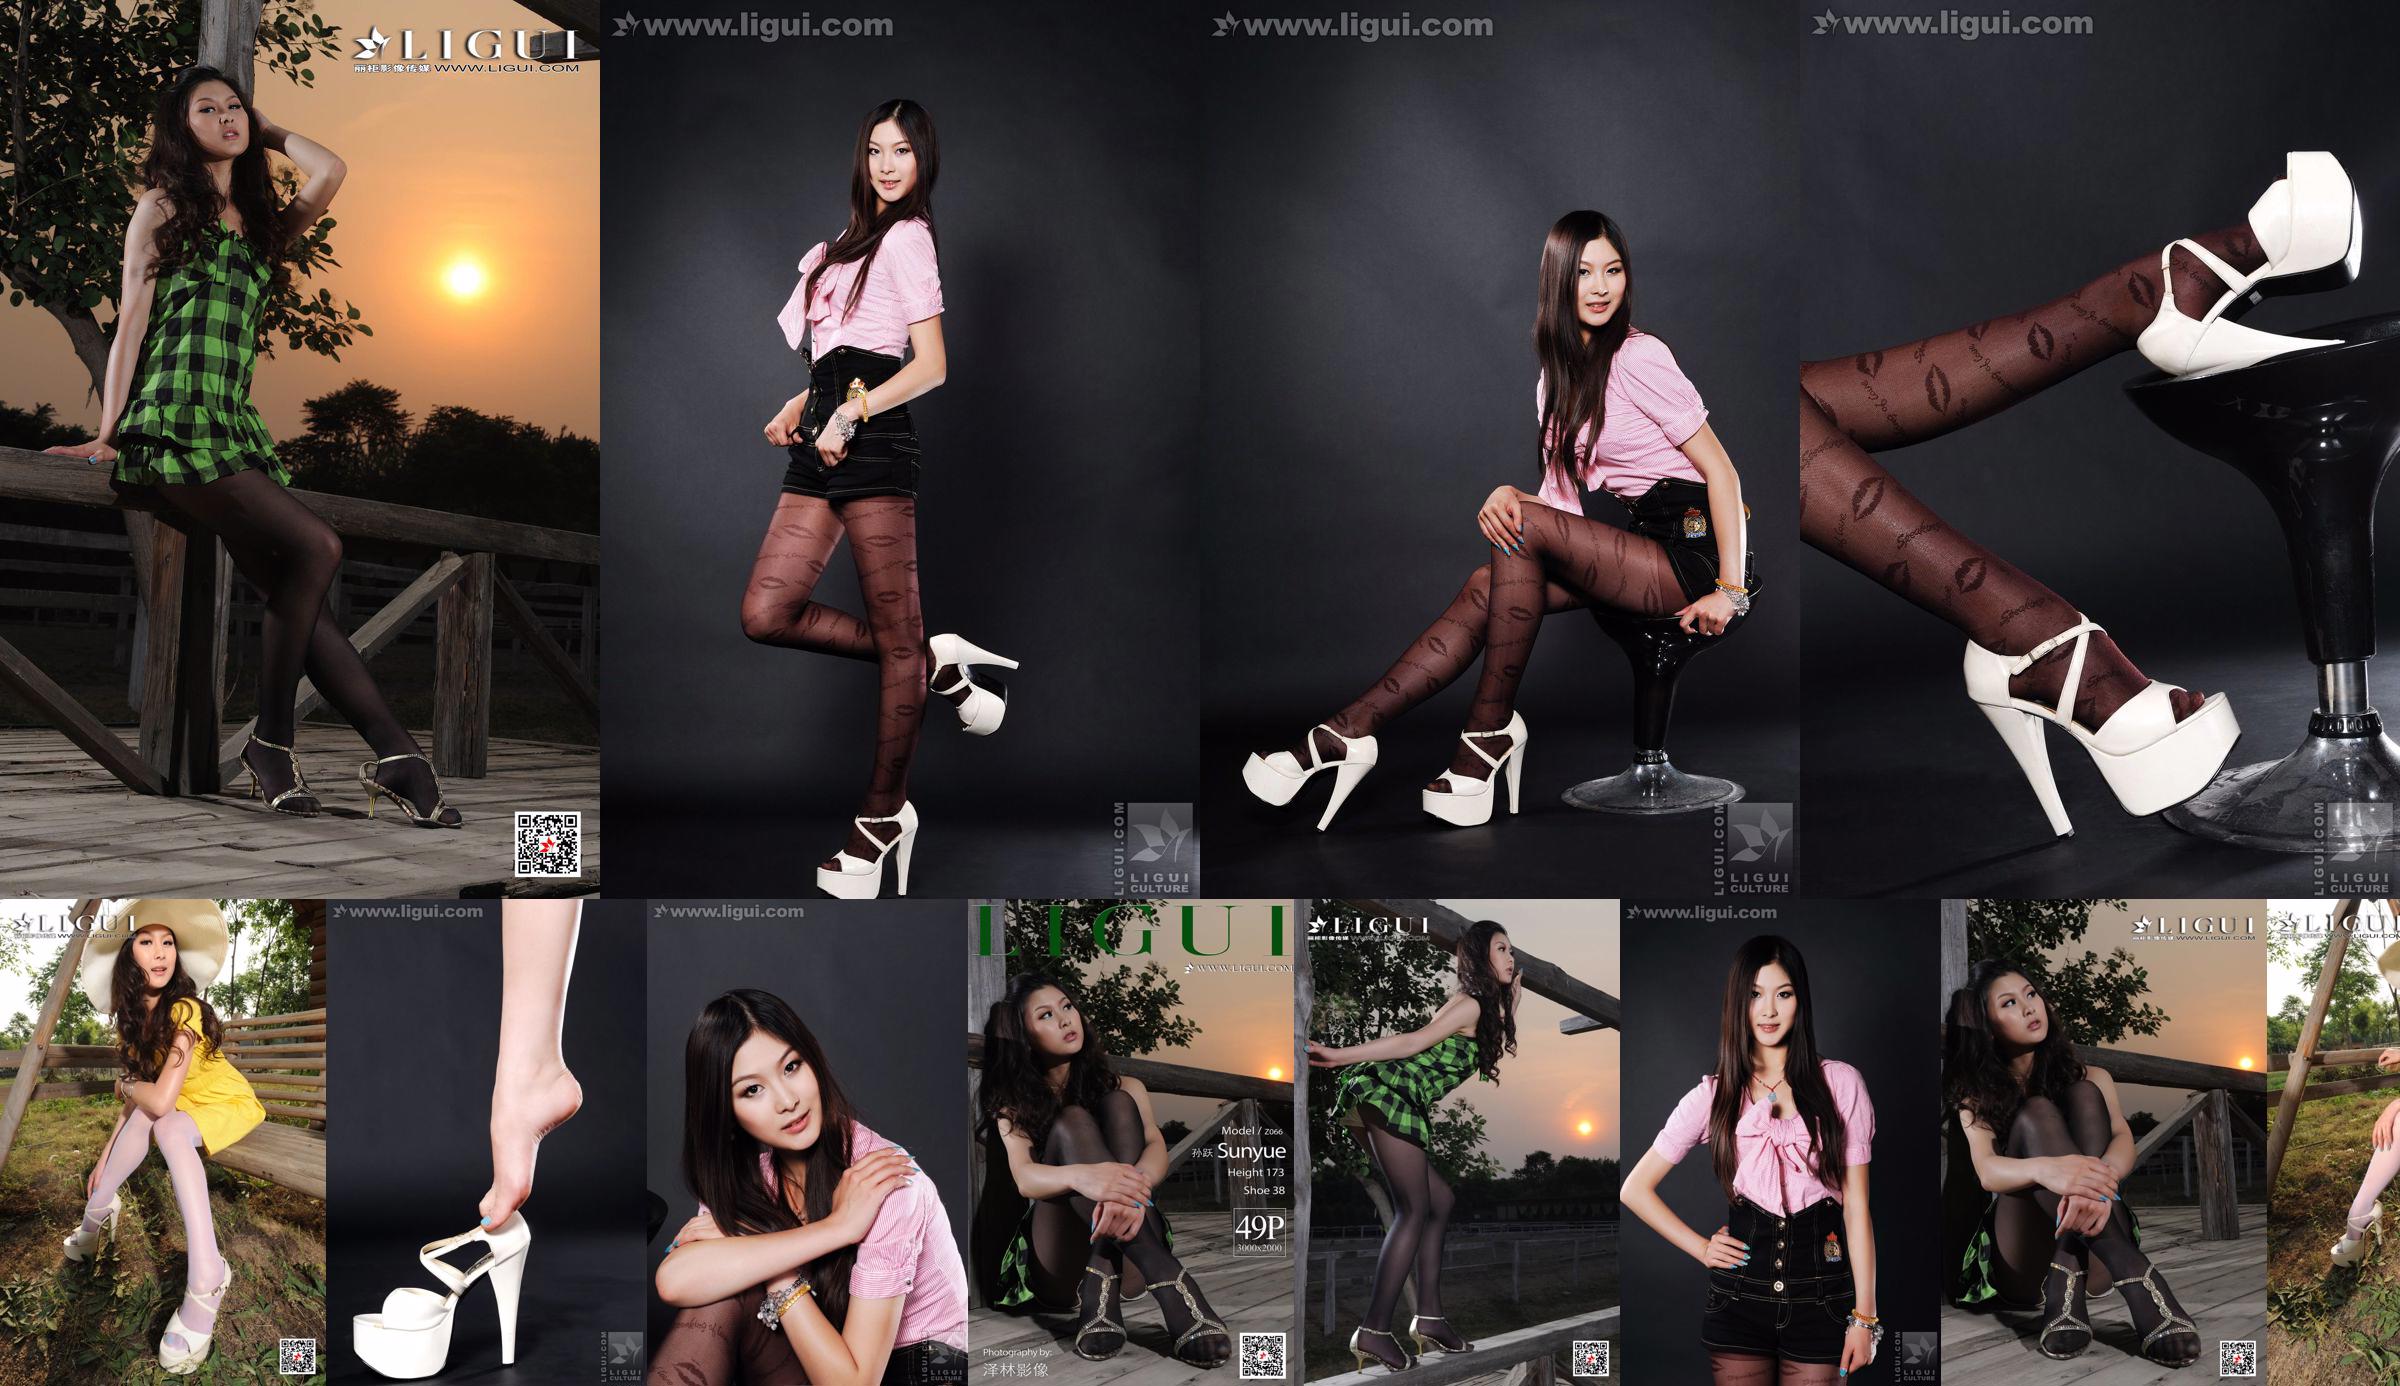 Modelo Sun Yue "Medias sexys y glamorosas" [丽 柜 LiGui] Fotos de piernas hermosas y pie de jade No.1fe368 Página 1